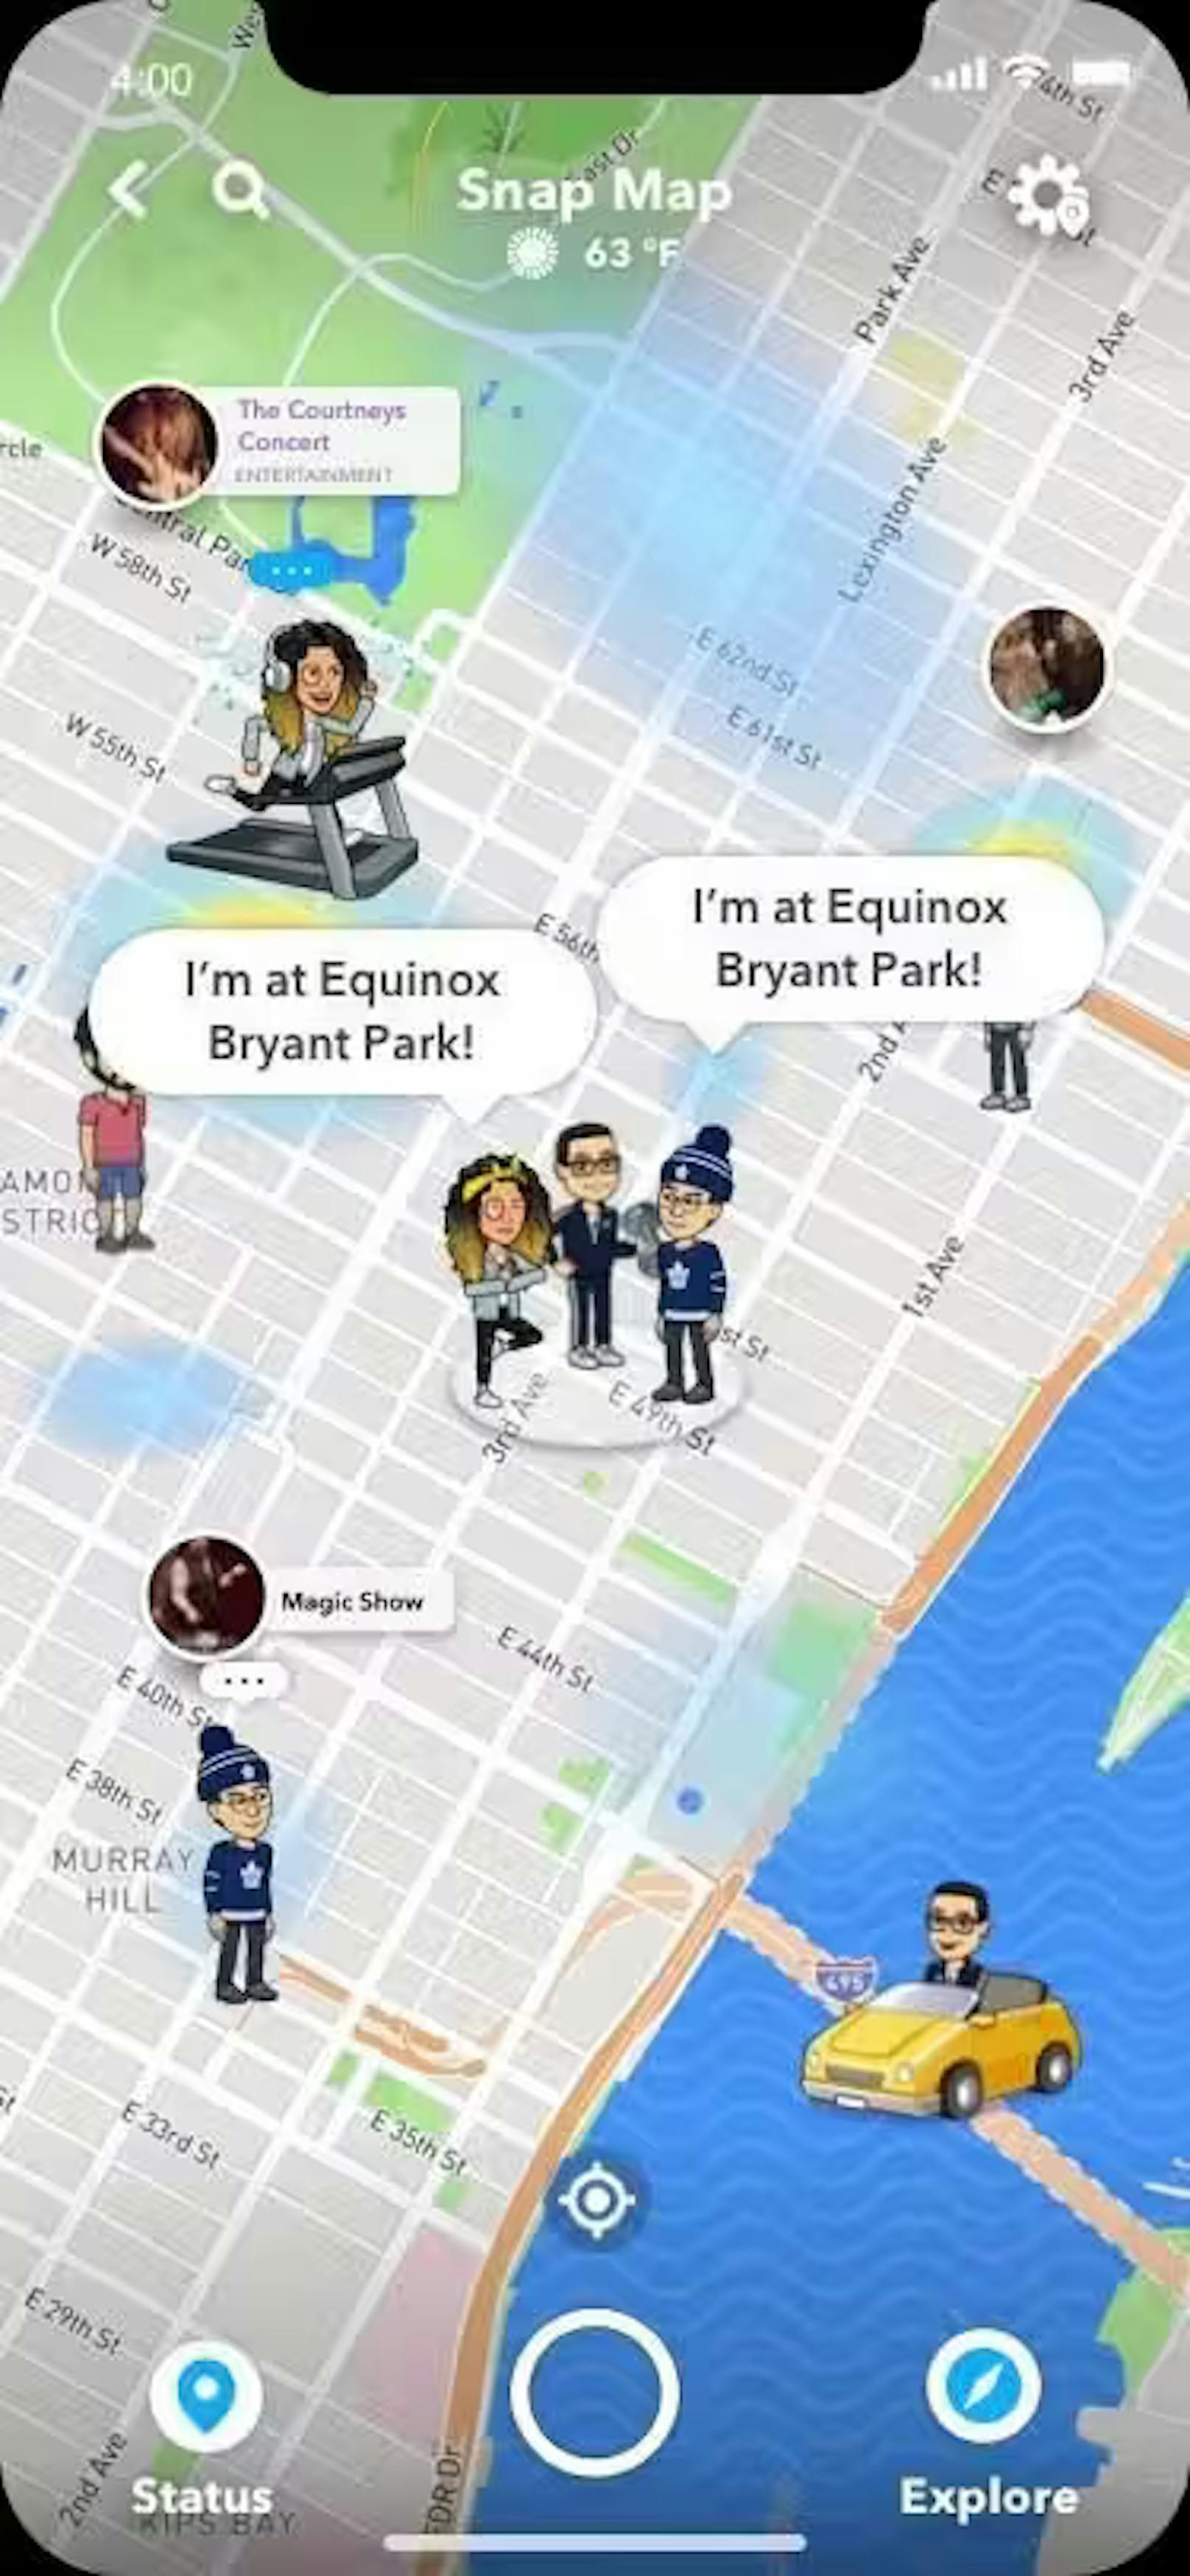 Die "Friend-Map" dürfte wohl in der Funktionalität eine Kopie der Karte von Snapchat sein, die dort schon seit 2017 existiert.